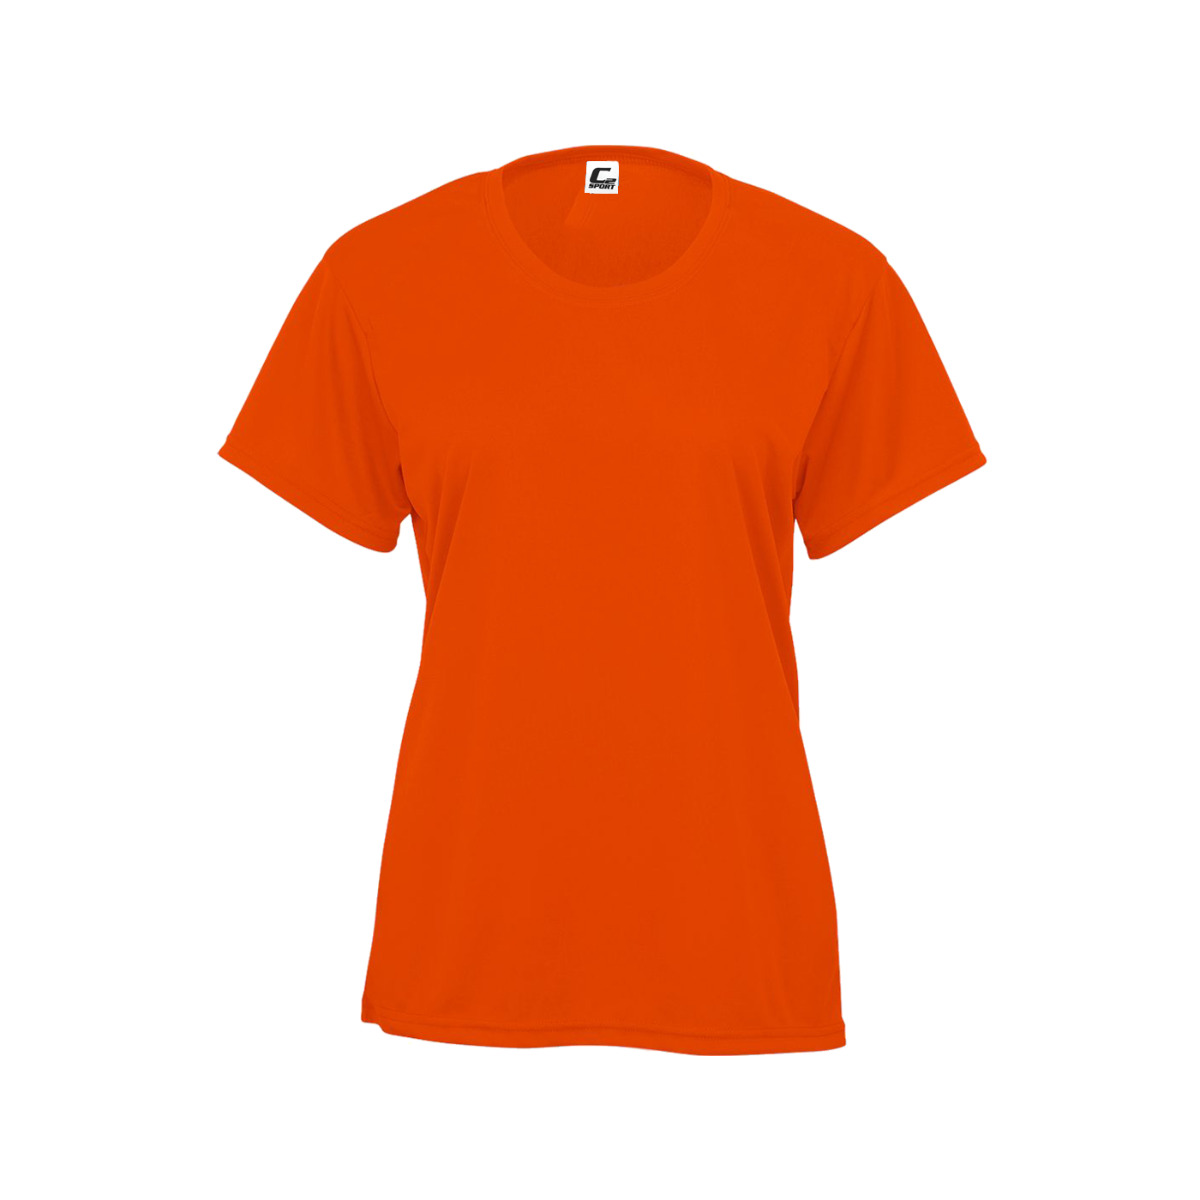 Badger Women's C2 Performance Shirt Burnt Orange Lg